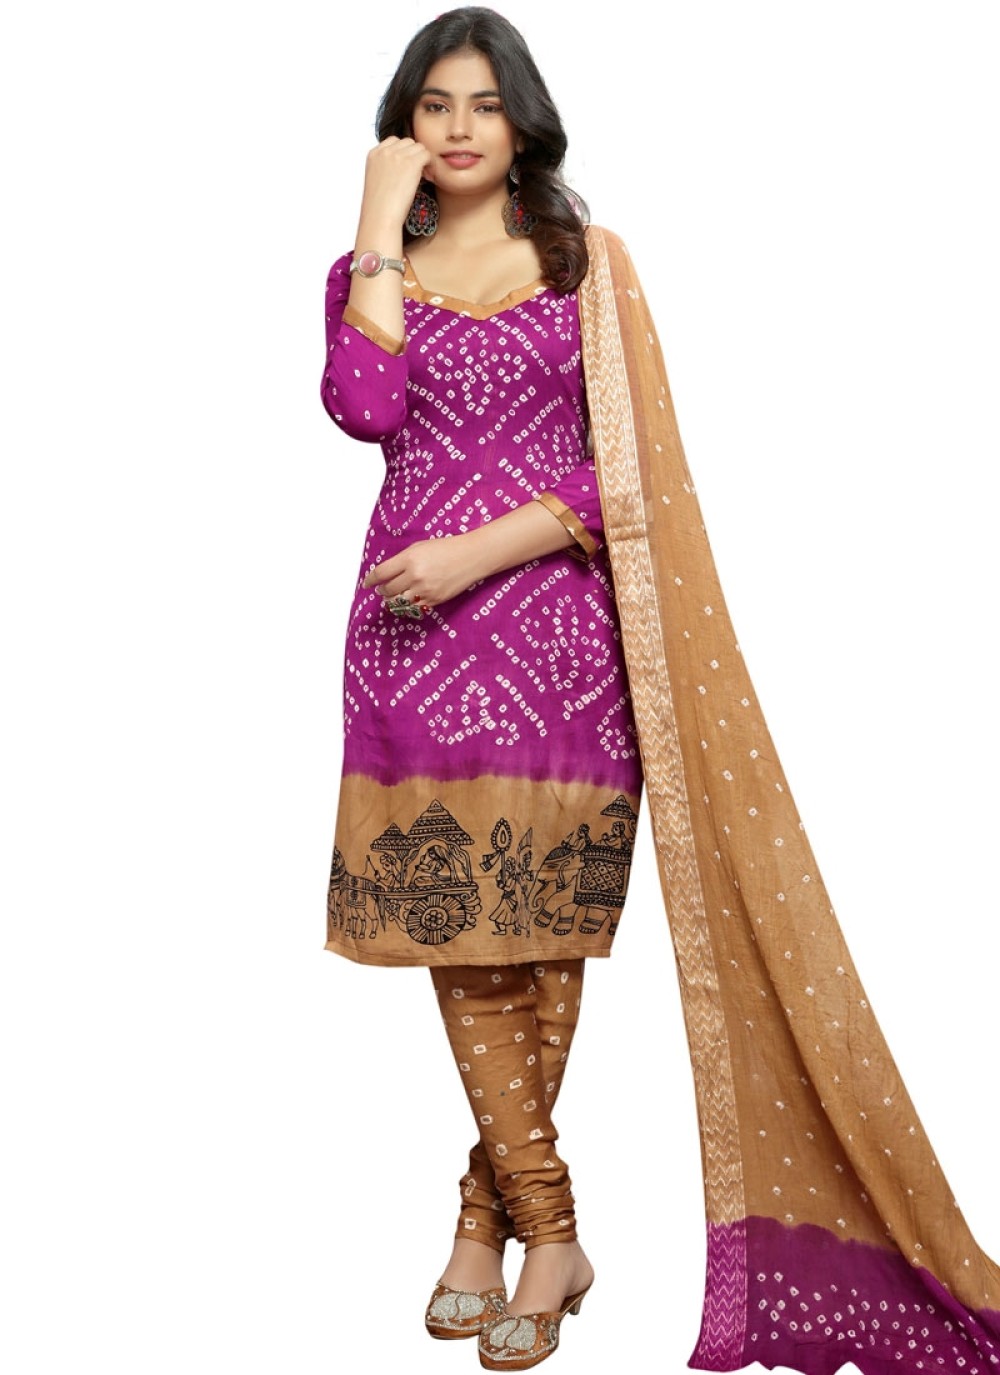 Pleasant Purple Color Churidar Suit - Salwar Kameez